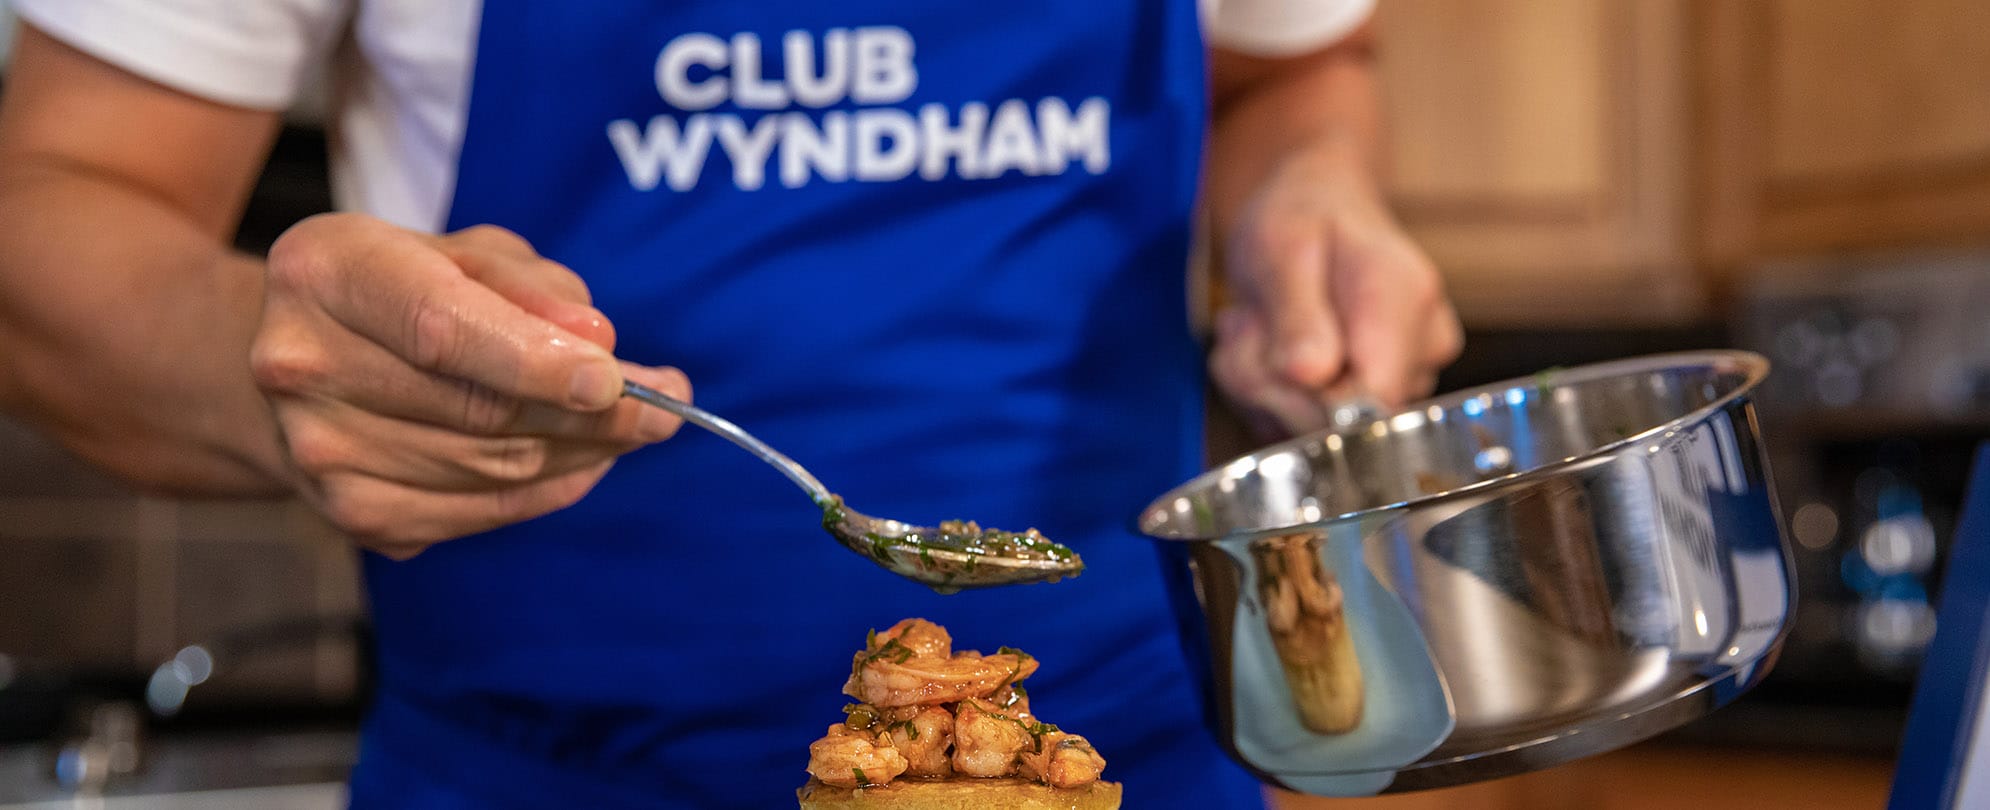 A chef in a Club Wyndham apron prepares a shrimp meal.